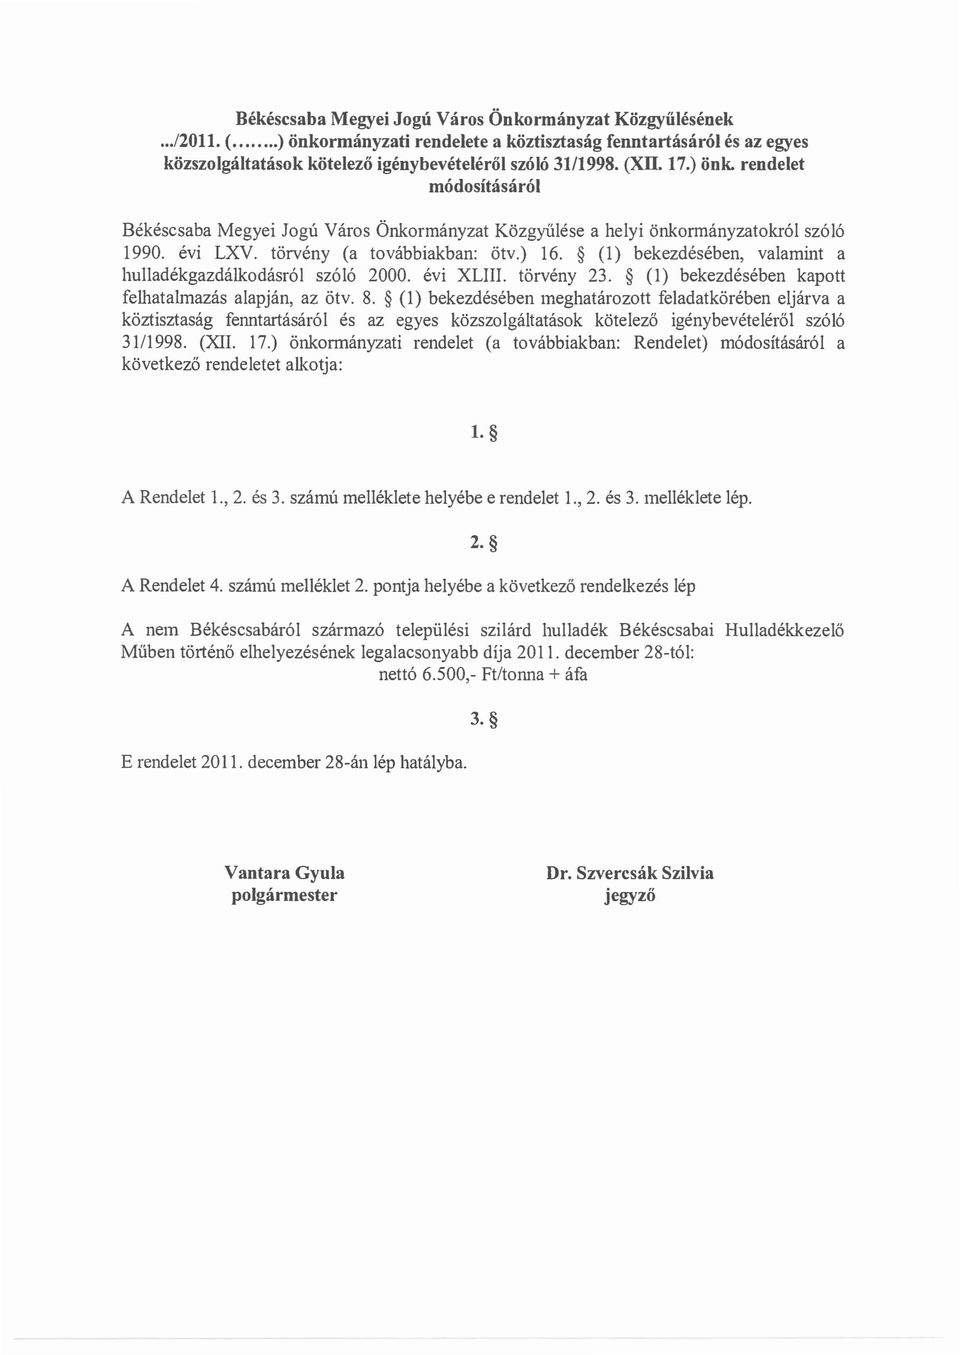 (1) bekezdeseben, valamint a hulladekgazdalkcdasrol sz616 2000. evi XLIII. torveny 23. (1) bekezdeseben kapott felhatalmazas alapjan, az 6tv. 8.